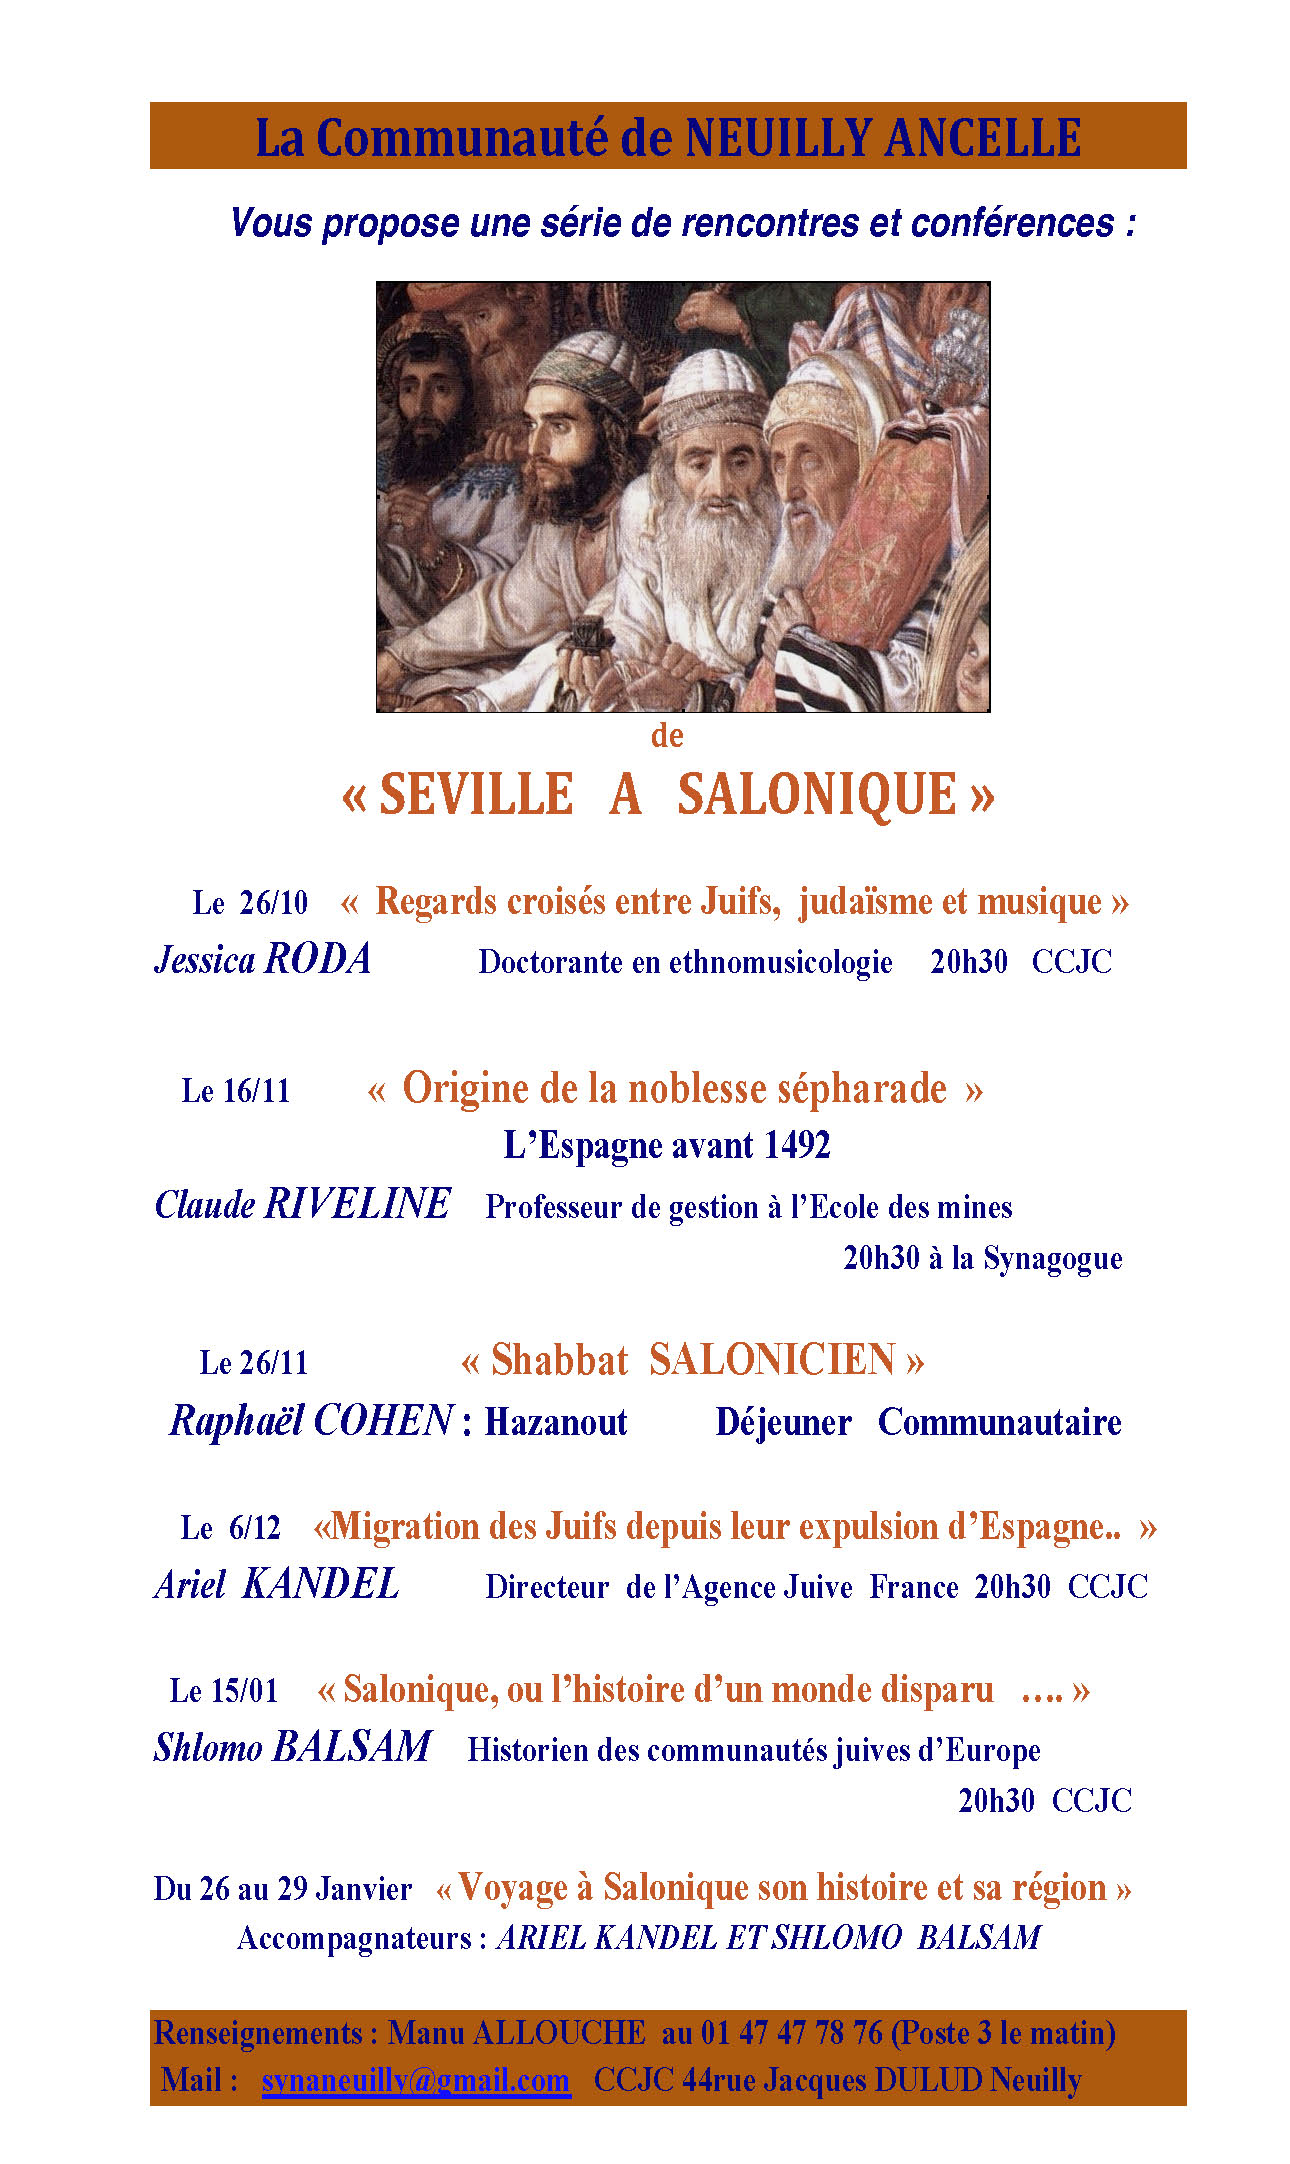 de_seville_a_salonique_pdf_2_-2.jpg